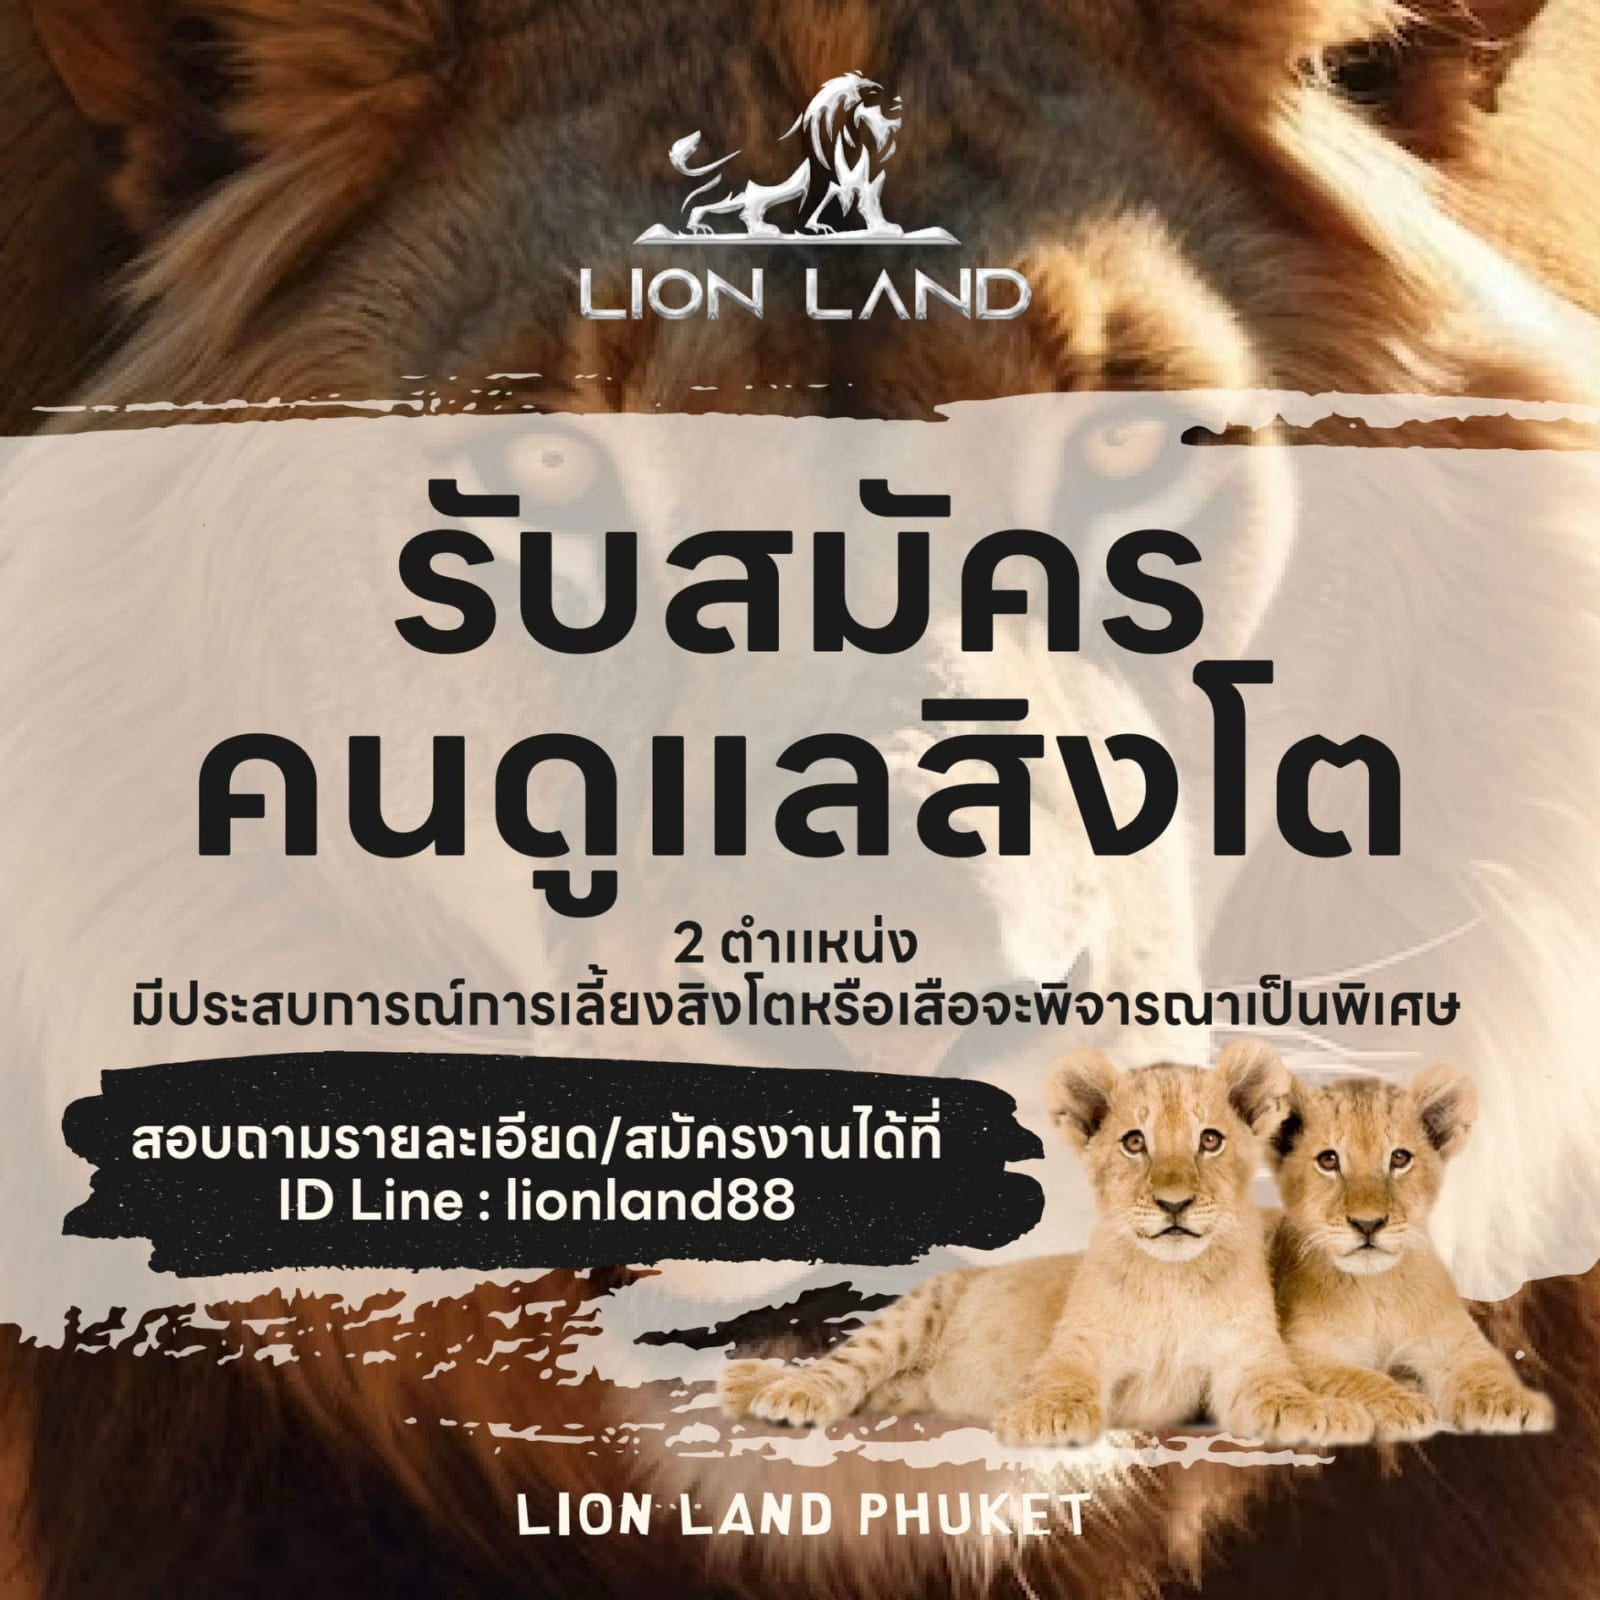 LION LAND PHUKET รับสมัครคนดูแลสิงโต